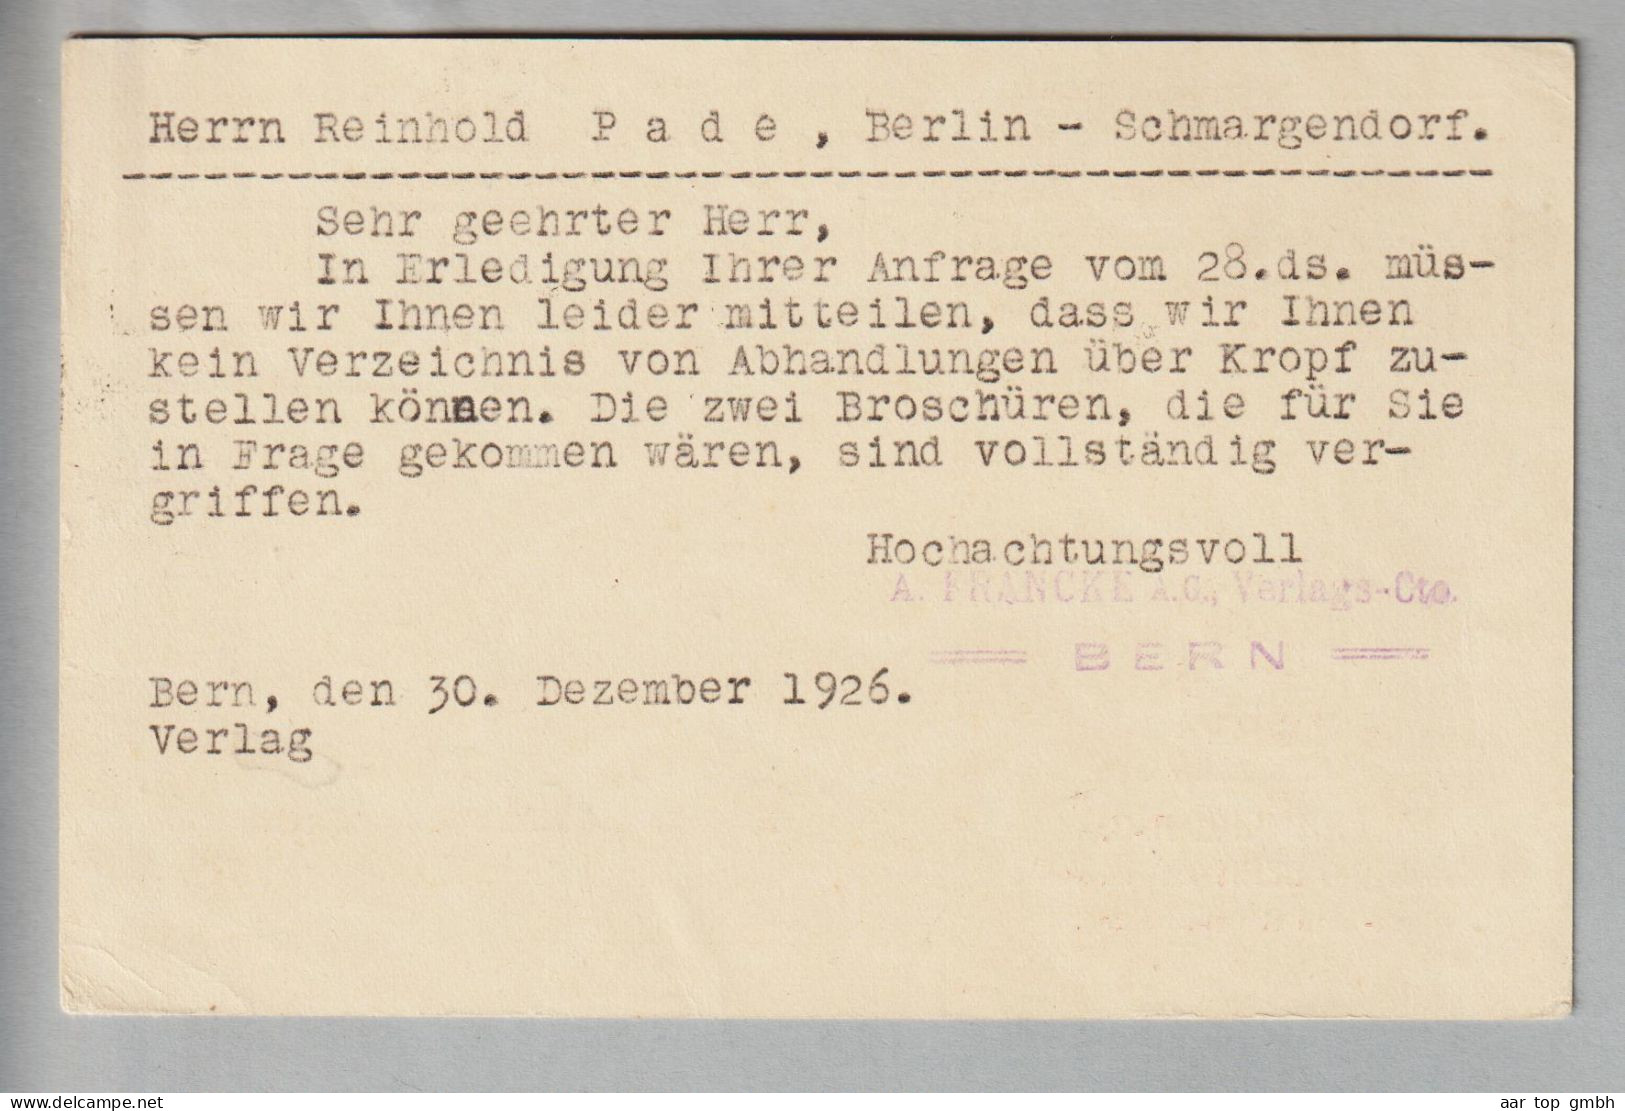 CH Ganzsache Bildpostkarte 20Rp. 1926-12-30 Bern1 Mit Privatzudruck A.Francke AG - Postwaardestukken